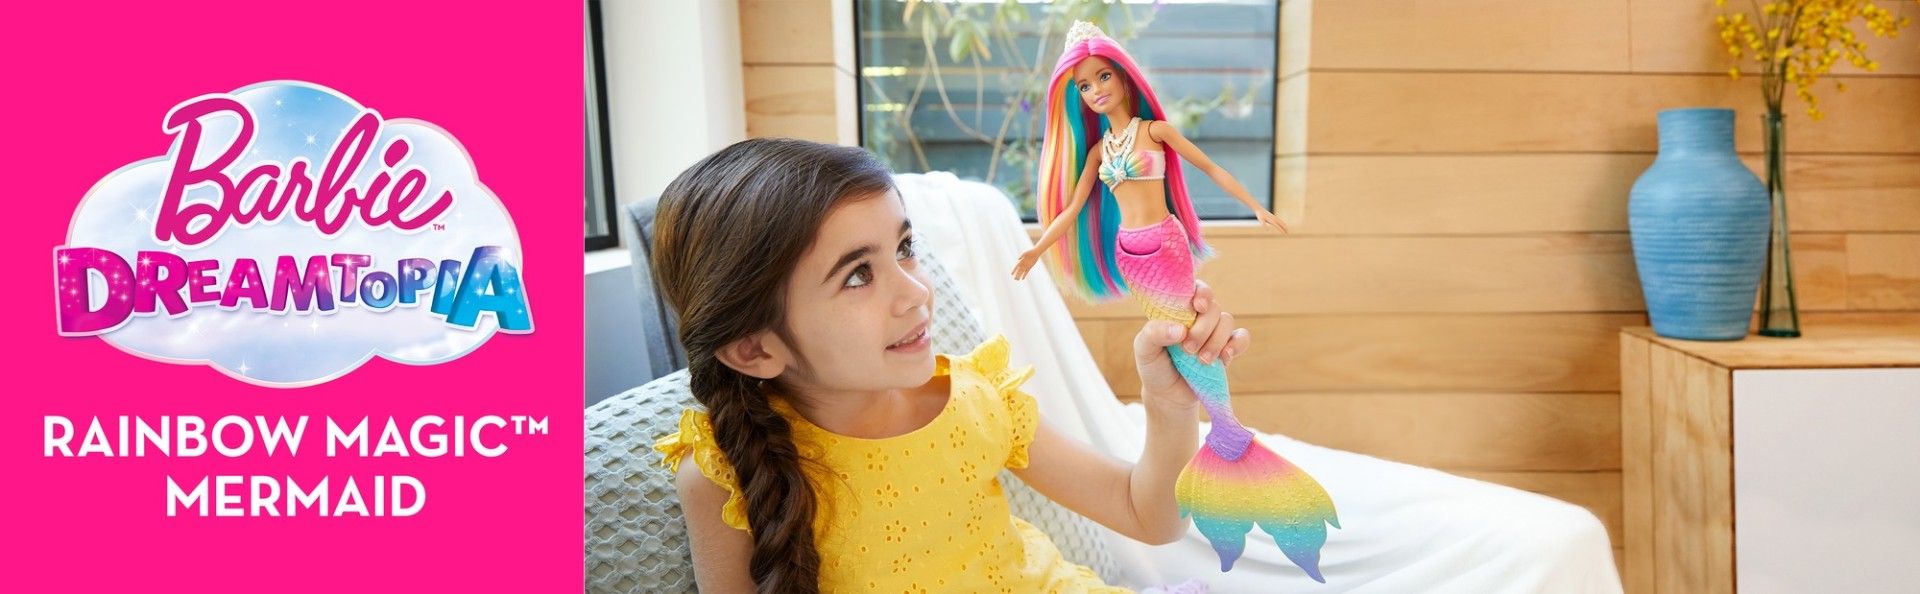 Mattel Barbie Duhová mořská panna